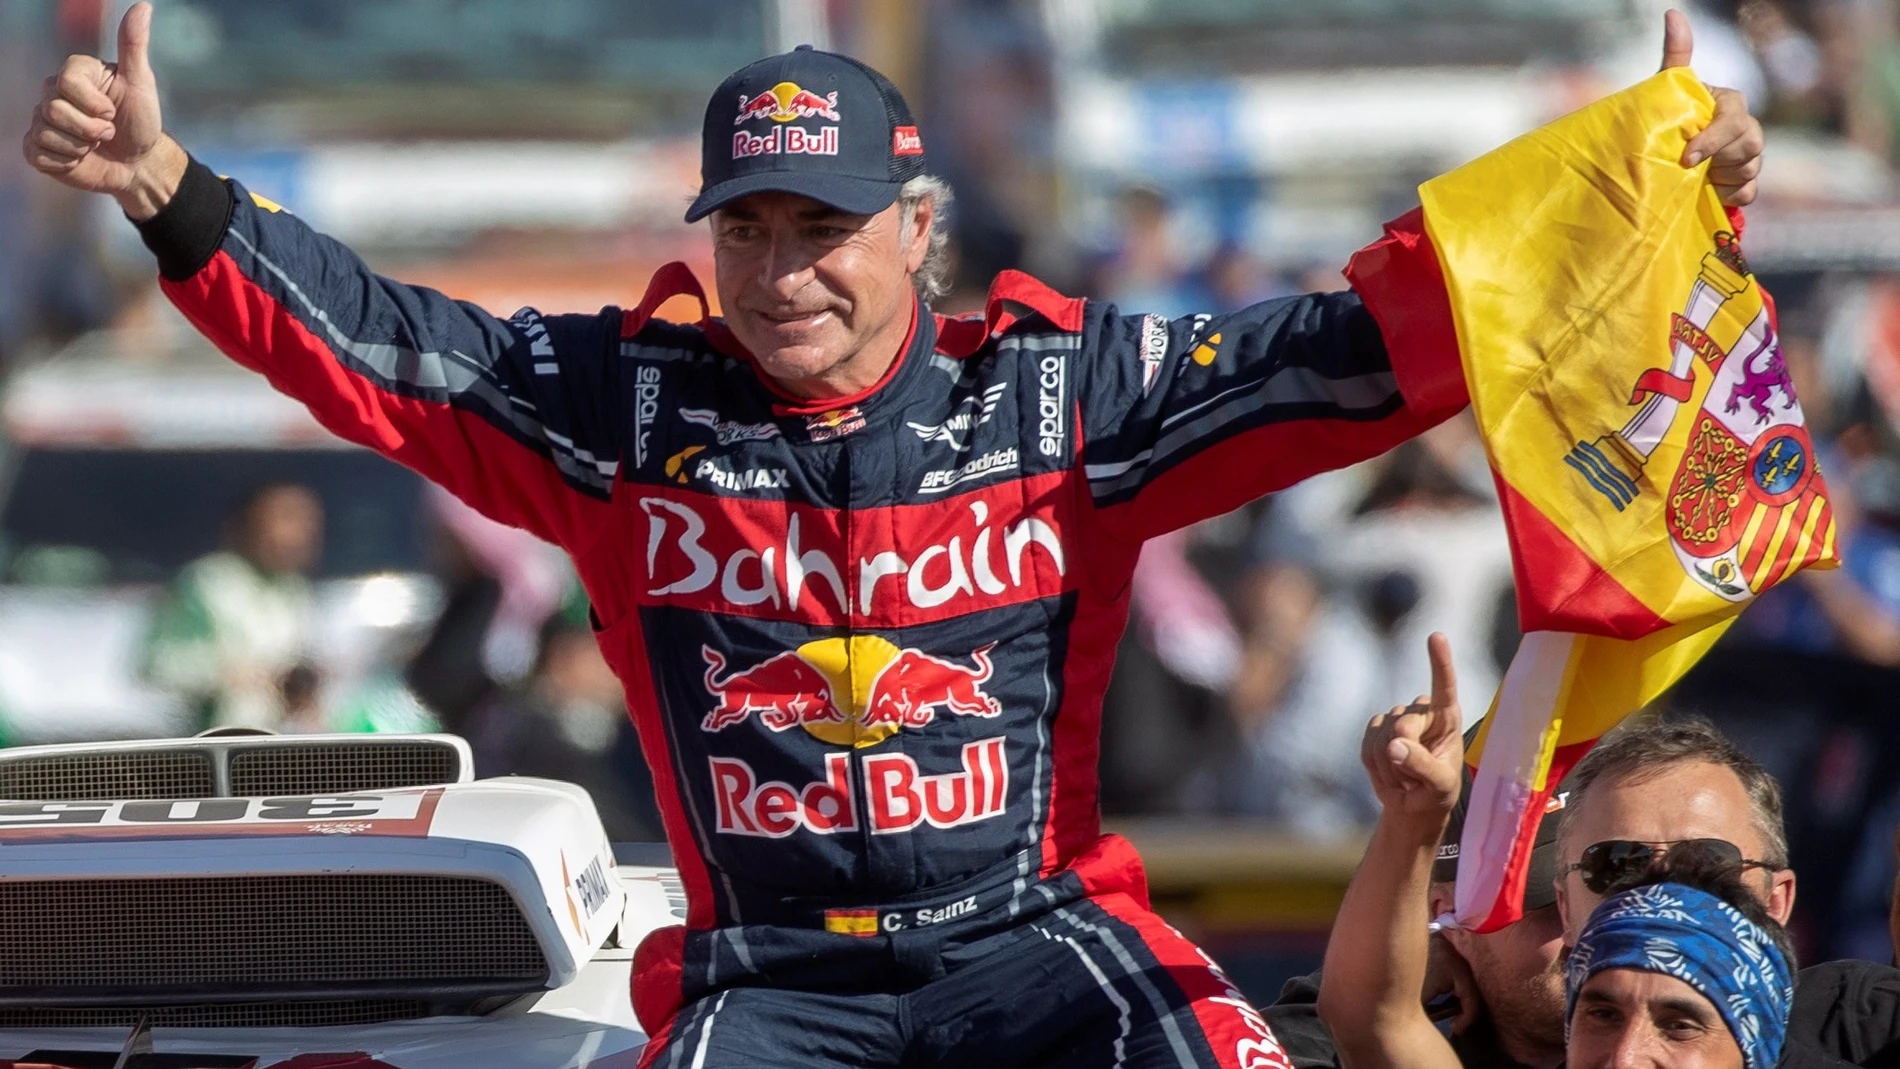 El piloto Carlos Sainz, considerado la primera gran leyenda del automovilismo español, ha sido distinguido este martes con el Premio Princesa de Asturias de los Deportes 2020. En la imagen, Carlos Sainz celebra su victoria en el Dakar 2020 en Qiddya, Arabia Saudí, el 17 de enero de 2020, con el equipo Bahrain JCW X-Raid Team.